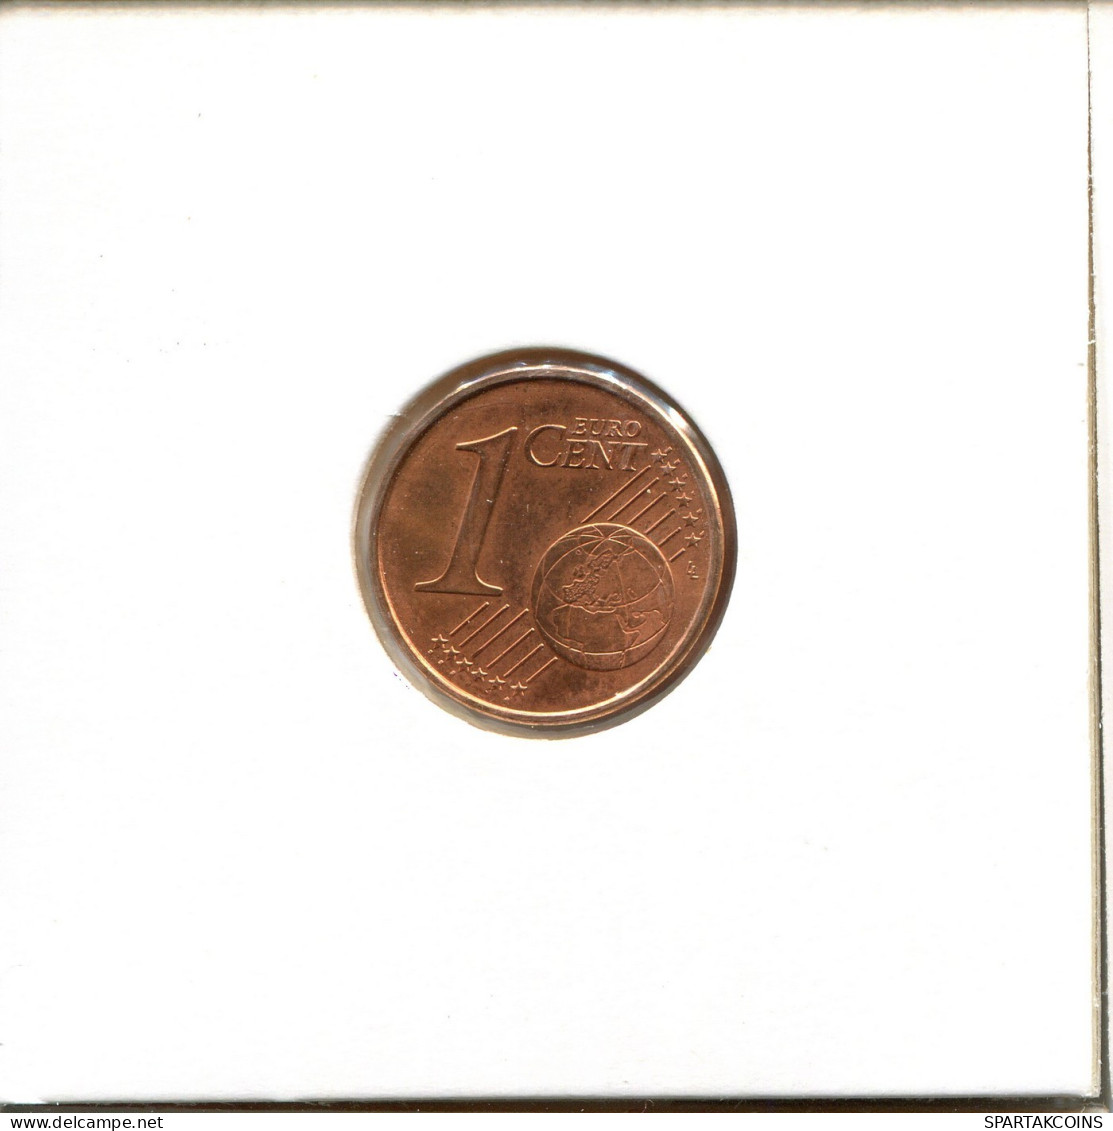 1 EURO CENT 2007 FRANKREICH FRANCE Französisch Münze #EU097.D.A - Francia